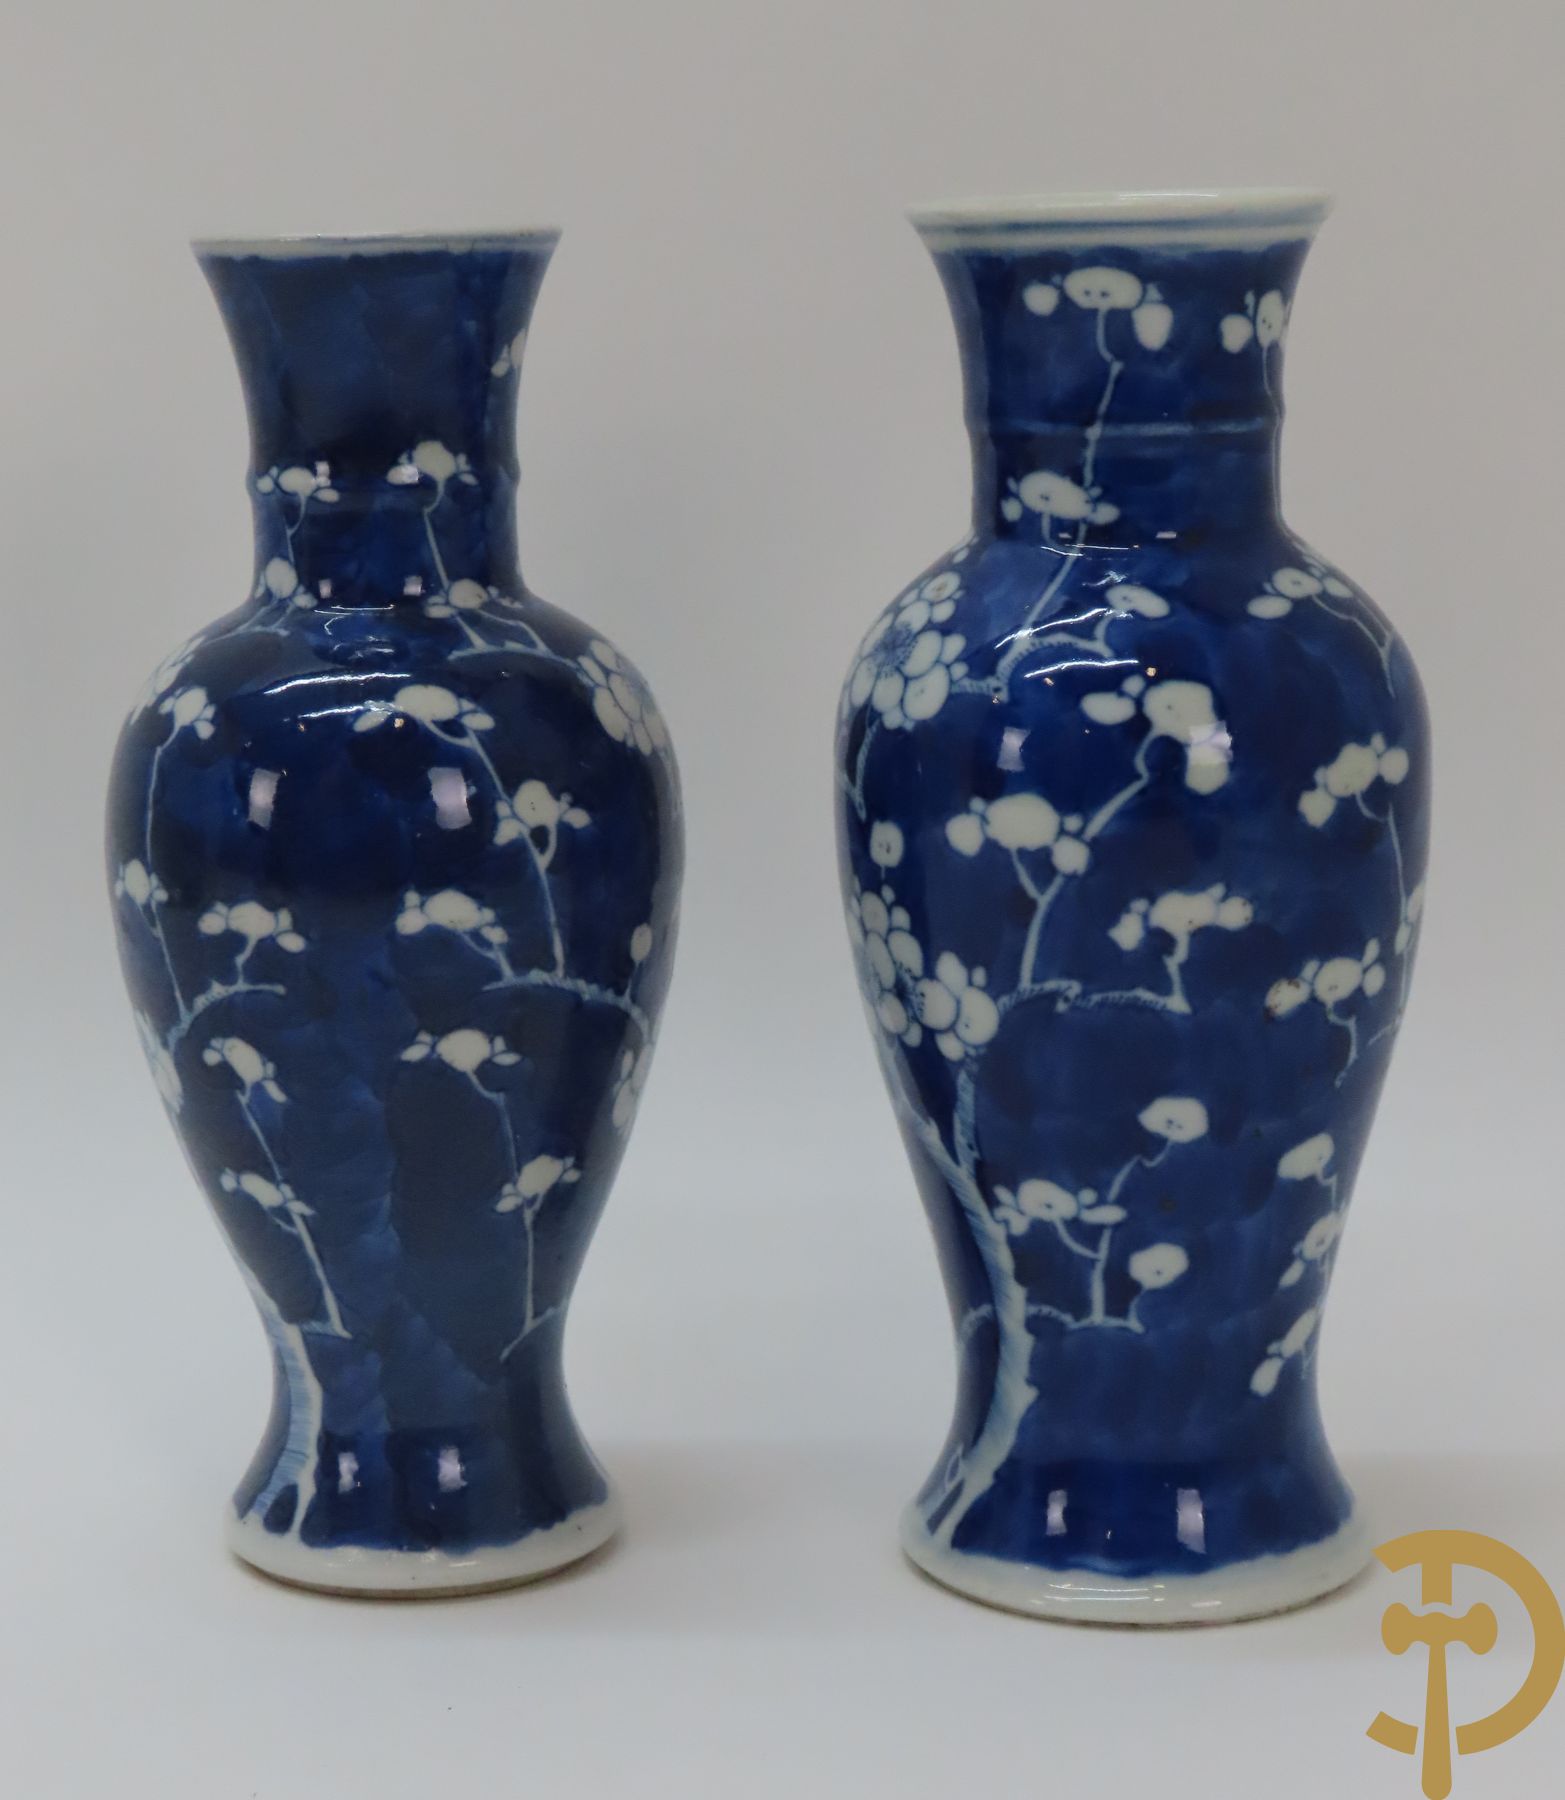 Chinees porseleinen blauw/wit vaasje met wijsgeren in landschap + 2 porseleinen blauw/wit vaasjes met bloemendecor, onderaan gemerkt